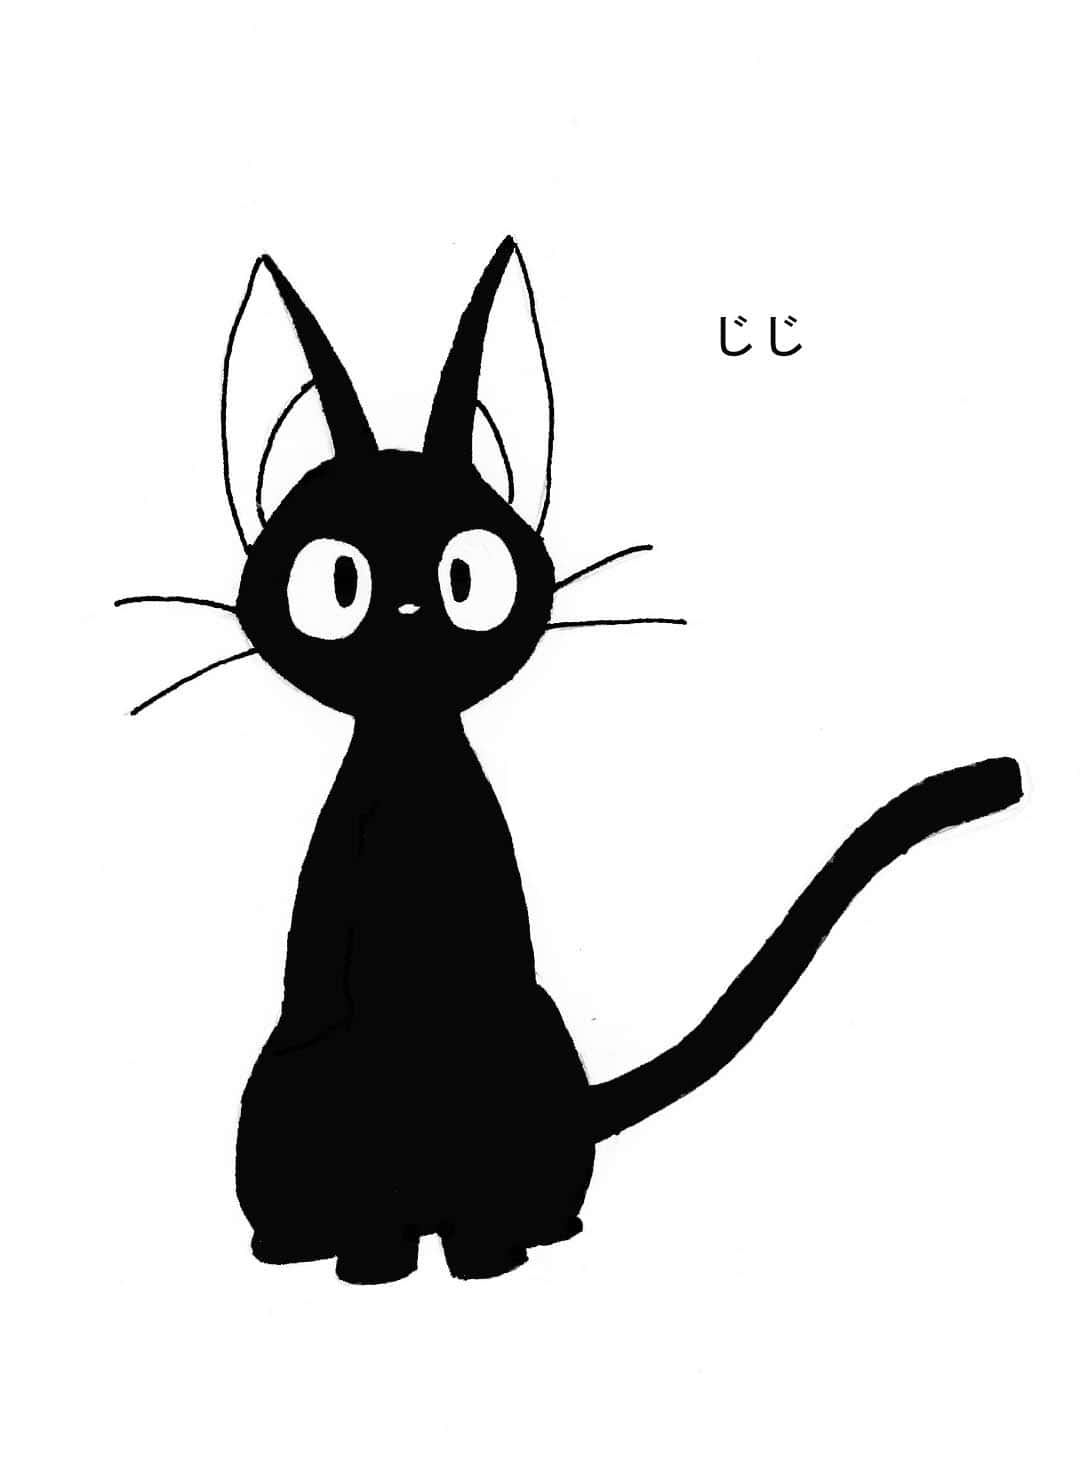 Jiji, the lovable black cat from Studio Ghibli's Kiki's Delivery Service Wallpaper